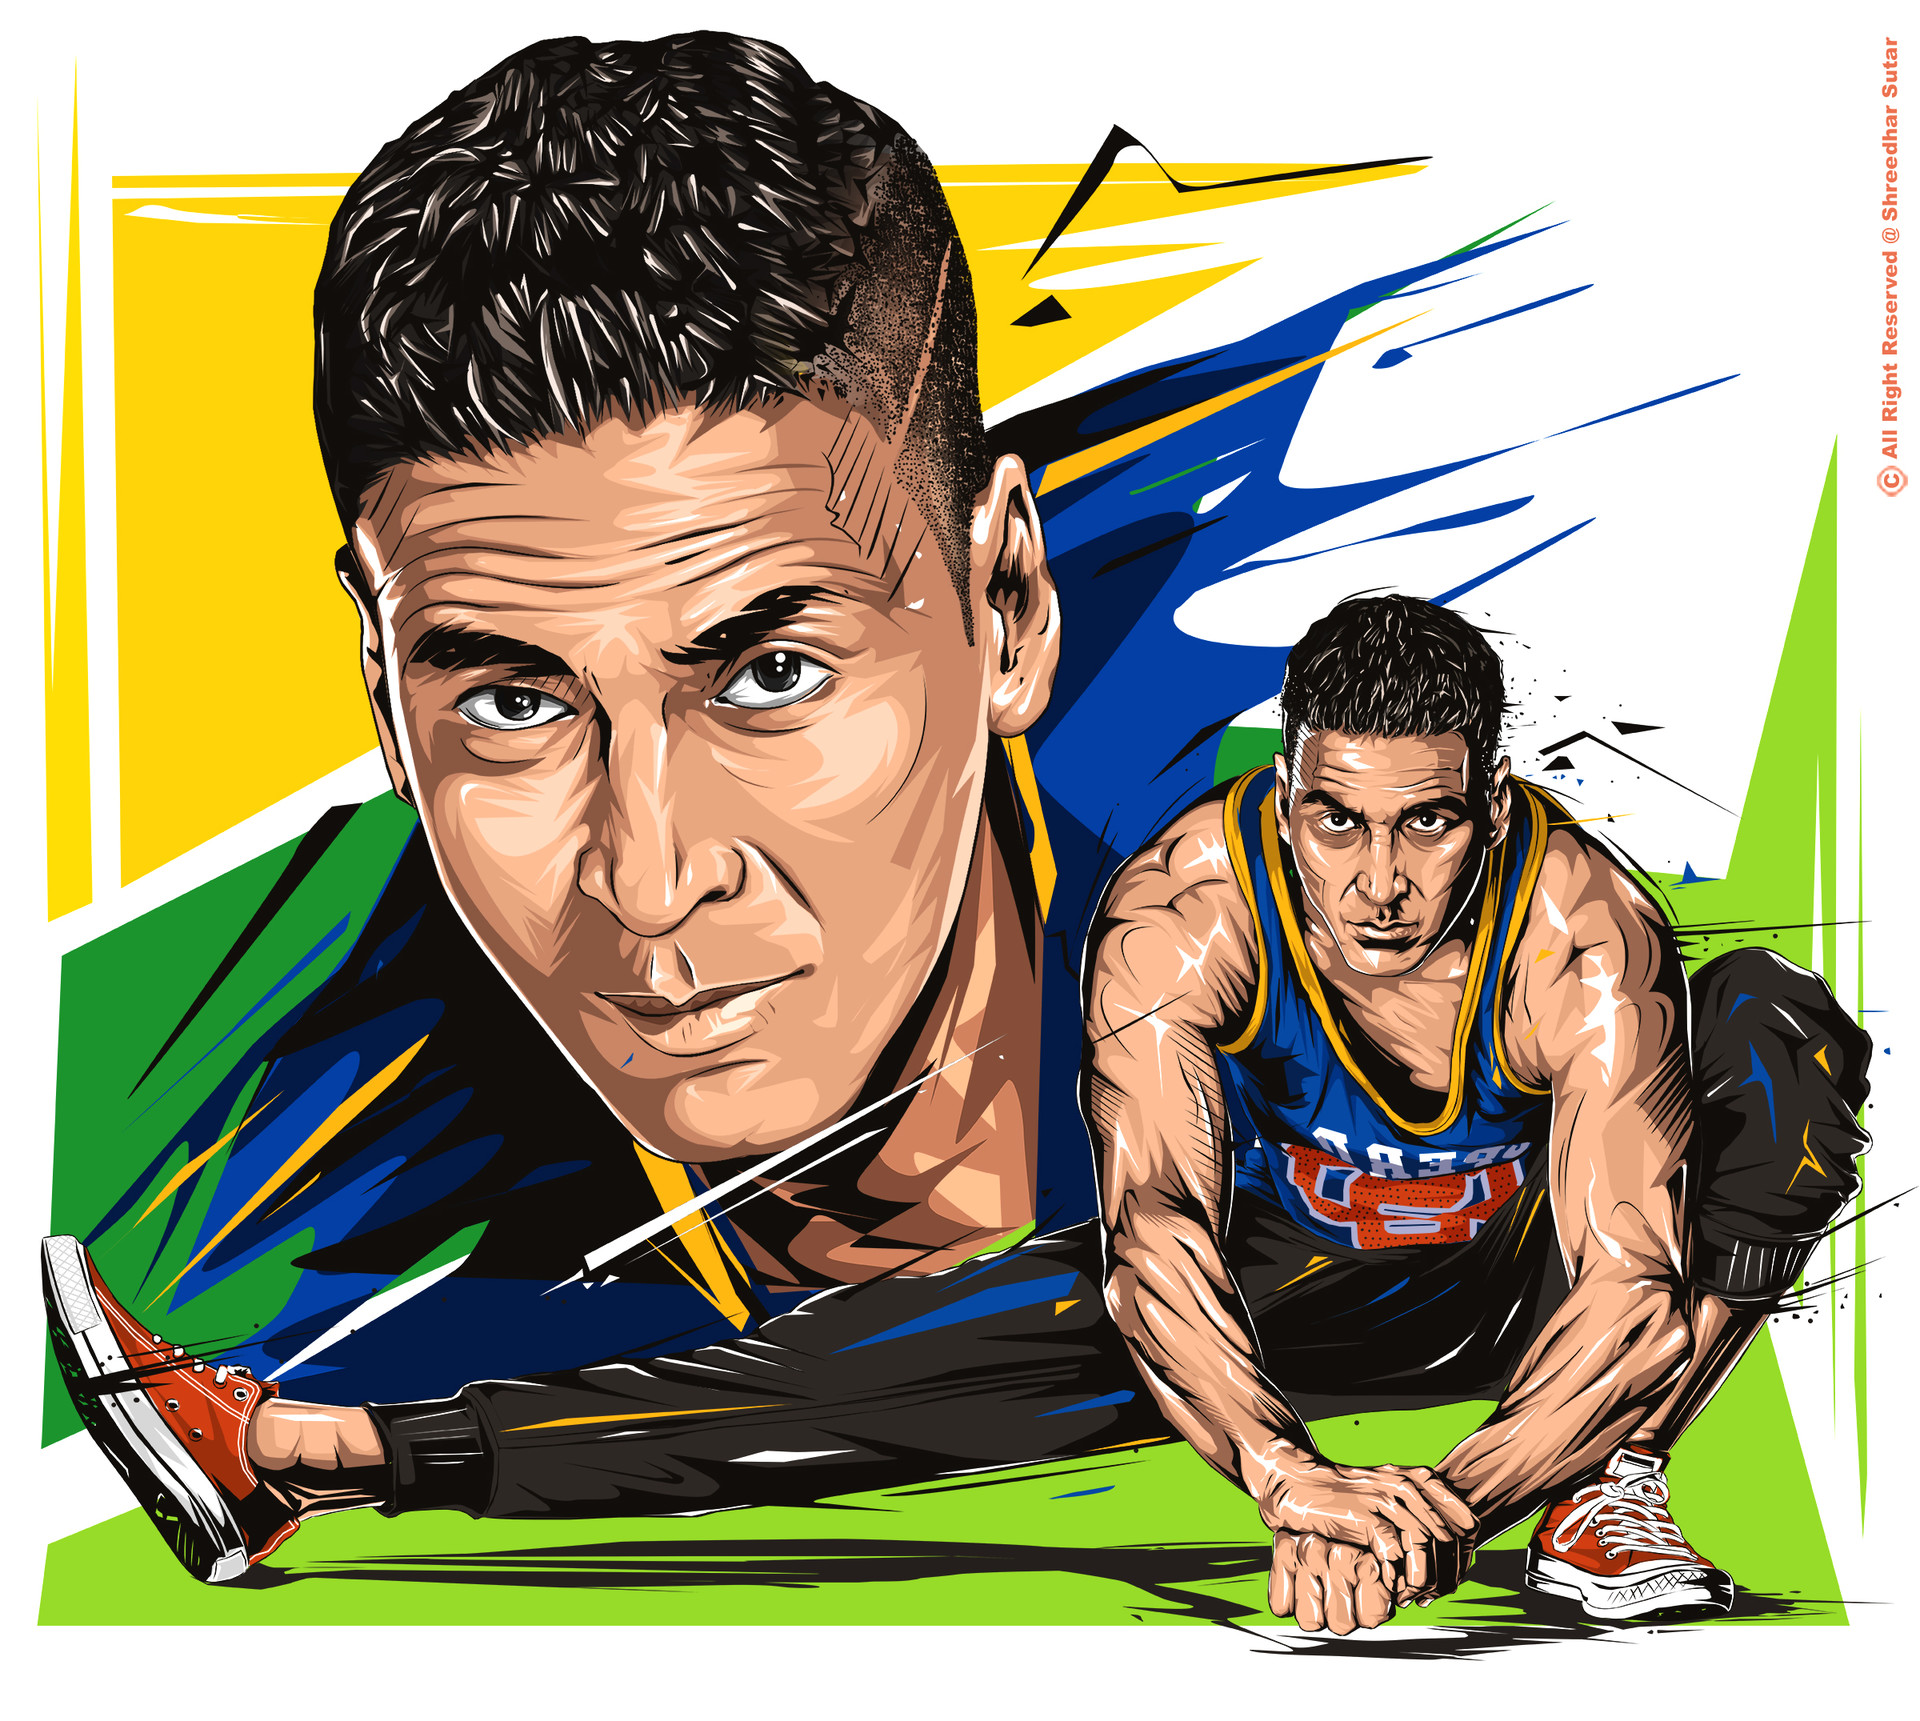 ArtStation - Akshay Kumar Sport Illustration